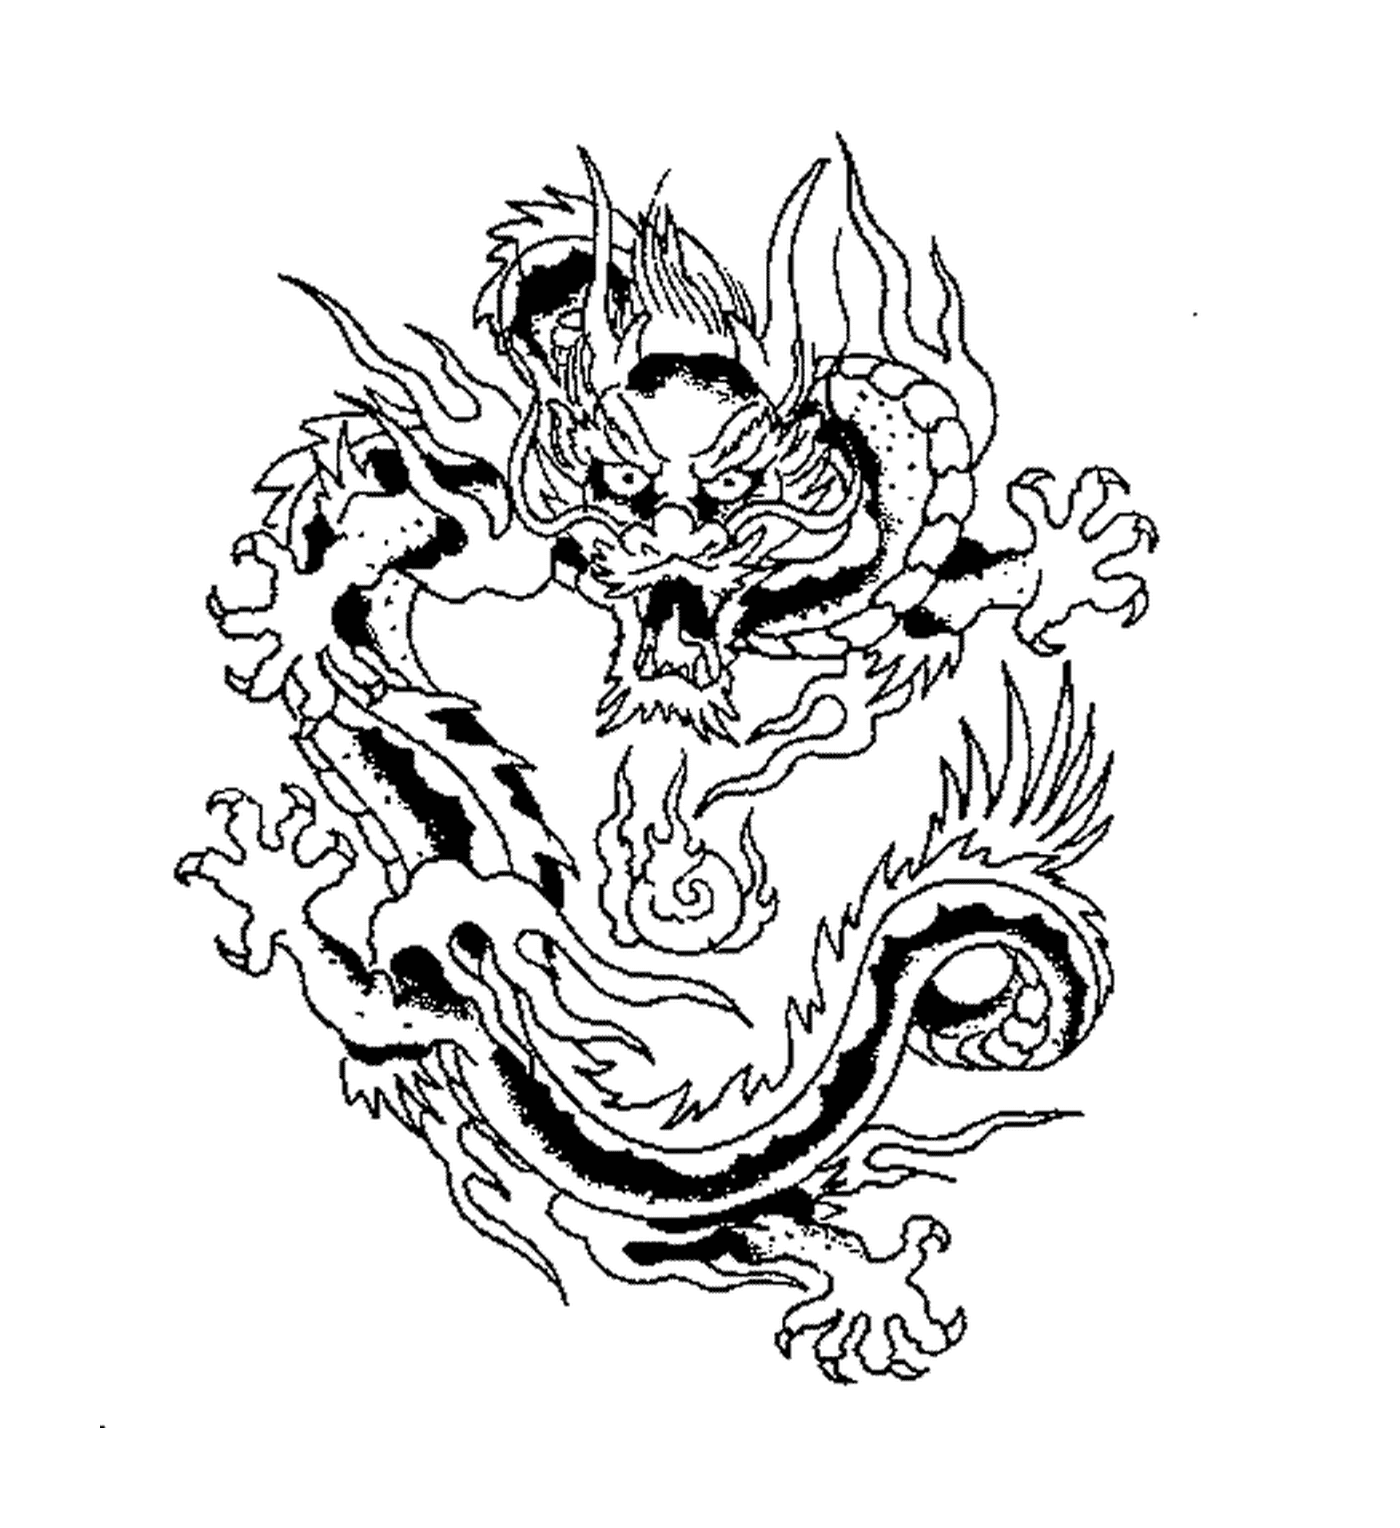  Disegno del tatuaggio del drago ispirato al cinese 